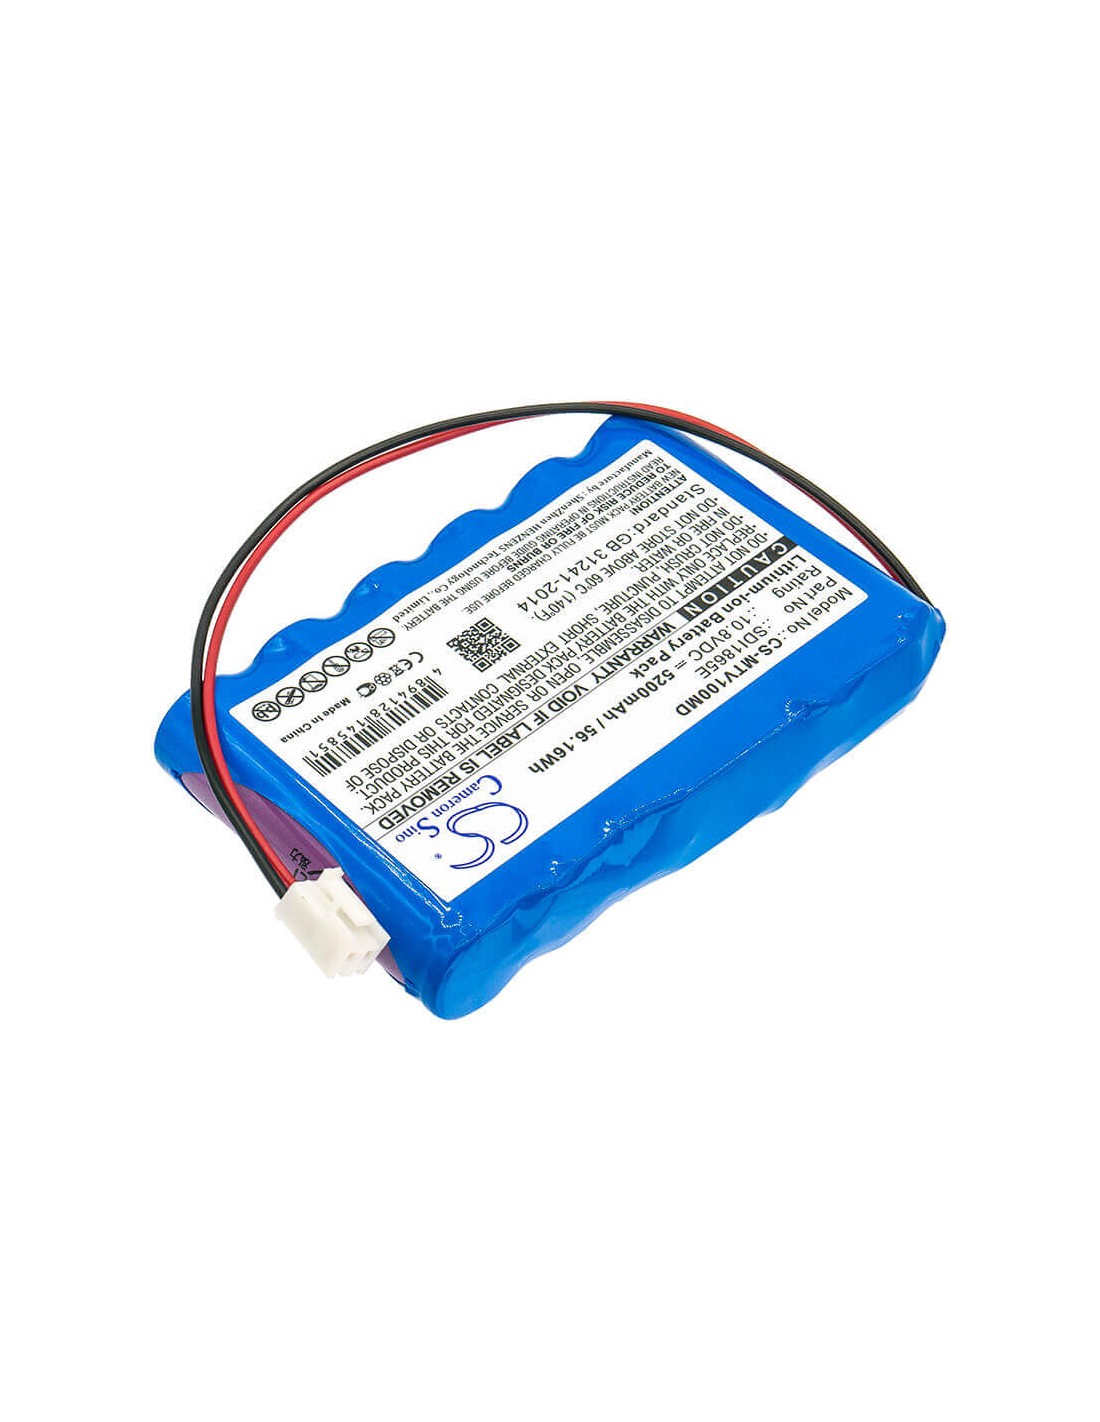 Battery for Mekics, Mtv 1000, 10.8V, 5200mAh - 56.16Wh